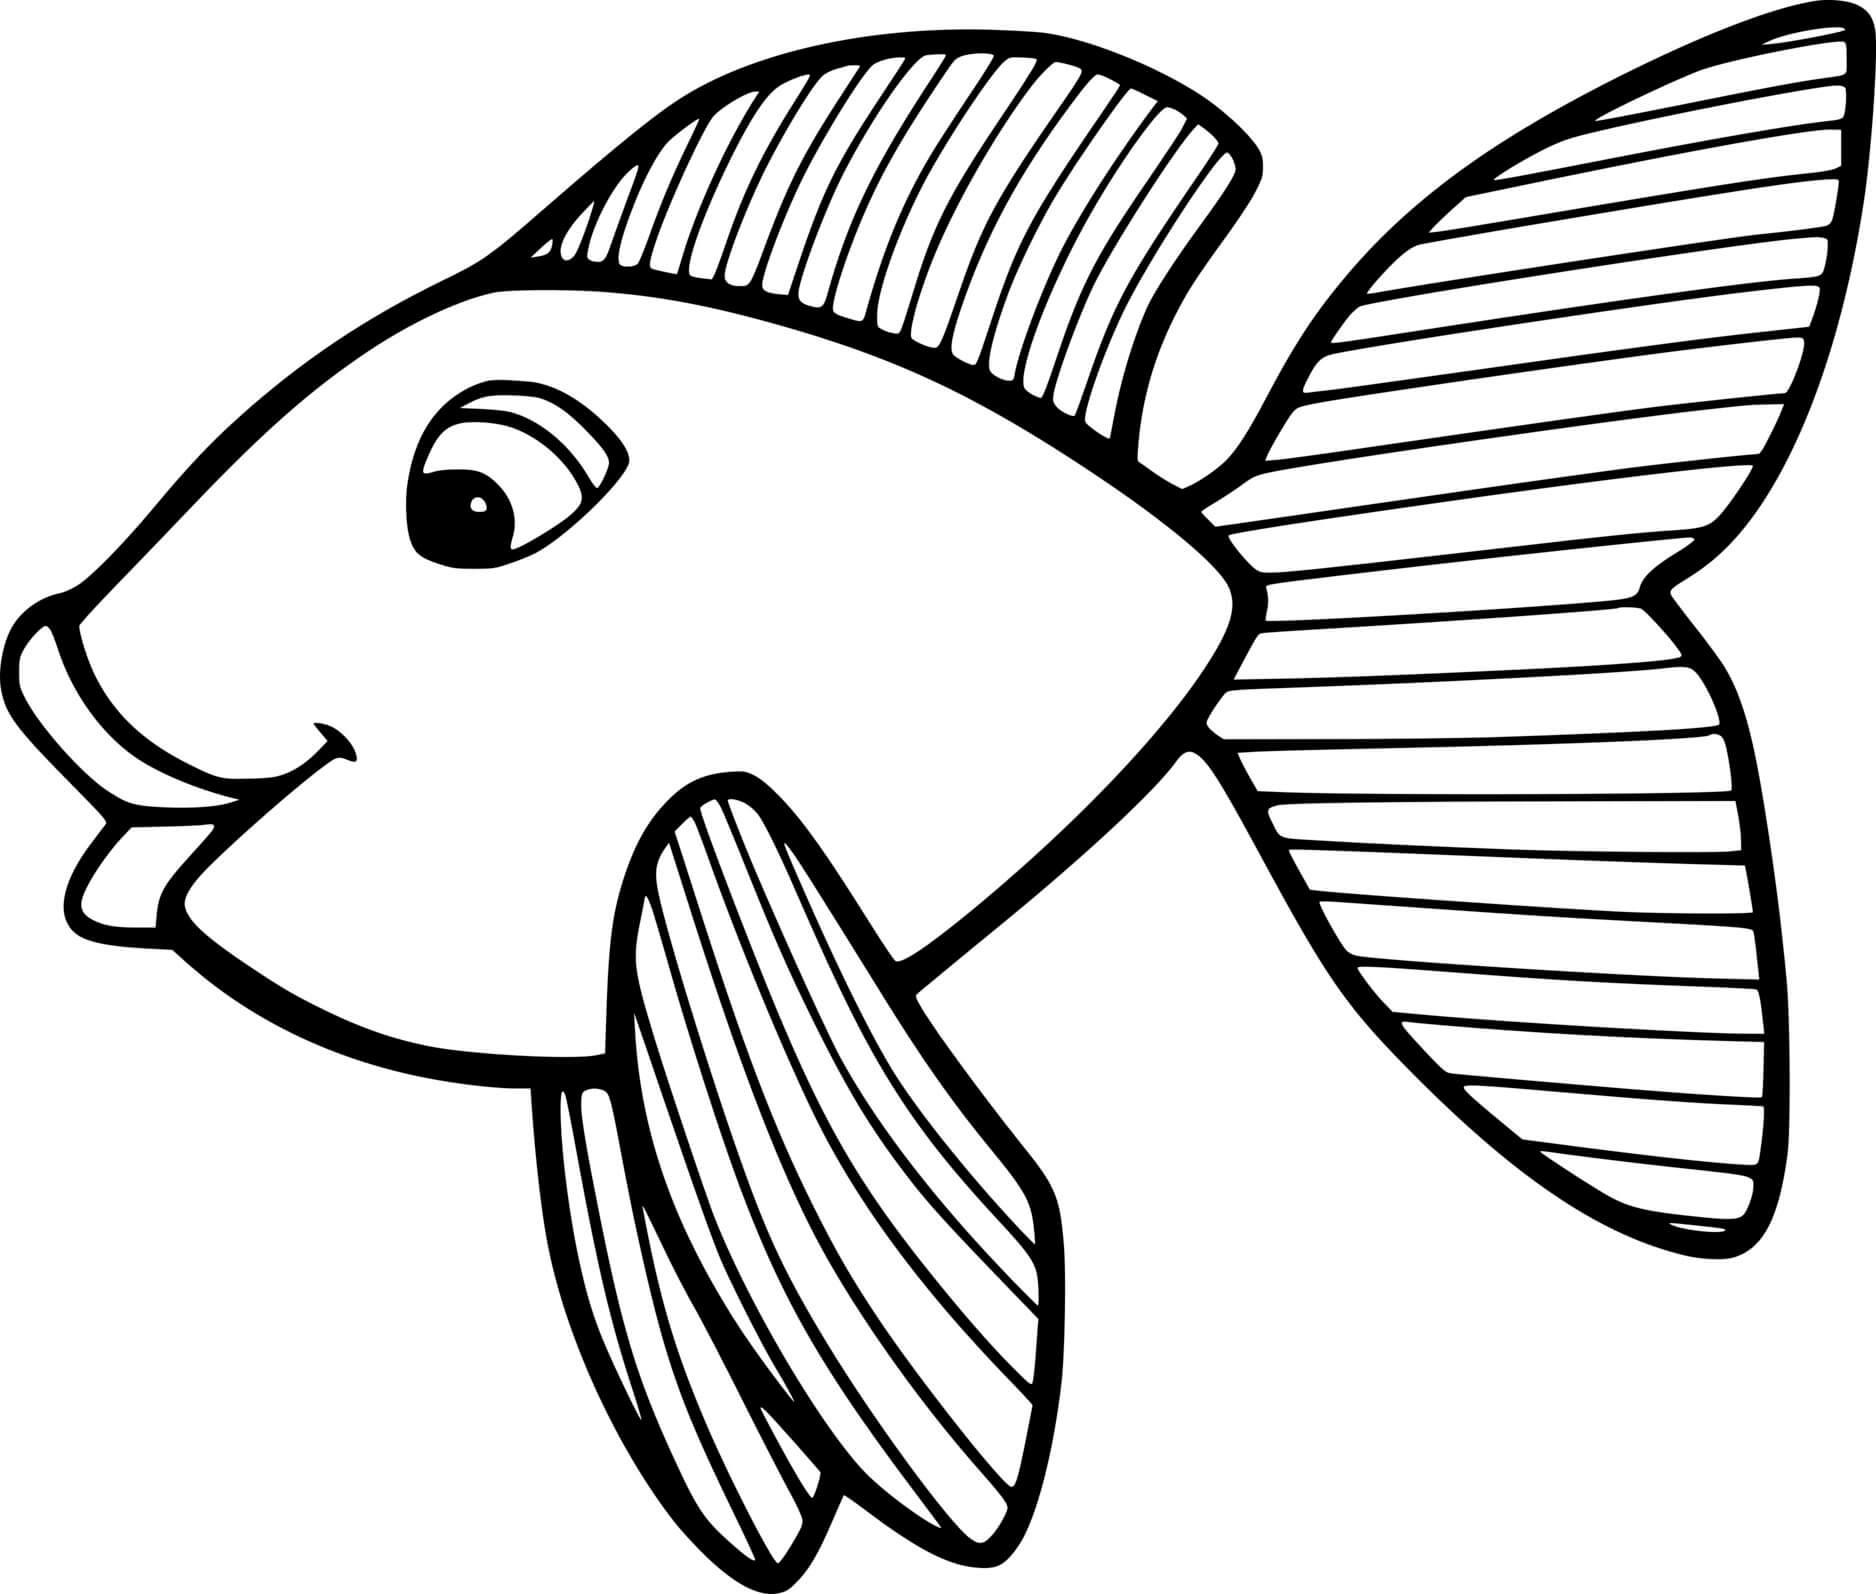 Раскраски рыбки для детей 3 4 лет. Раскраска рыбка. Золотая рыбка раскраска. Раскраска рыбка крупная. Золотая рыбка раскраска для детей.